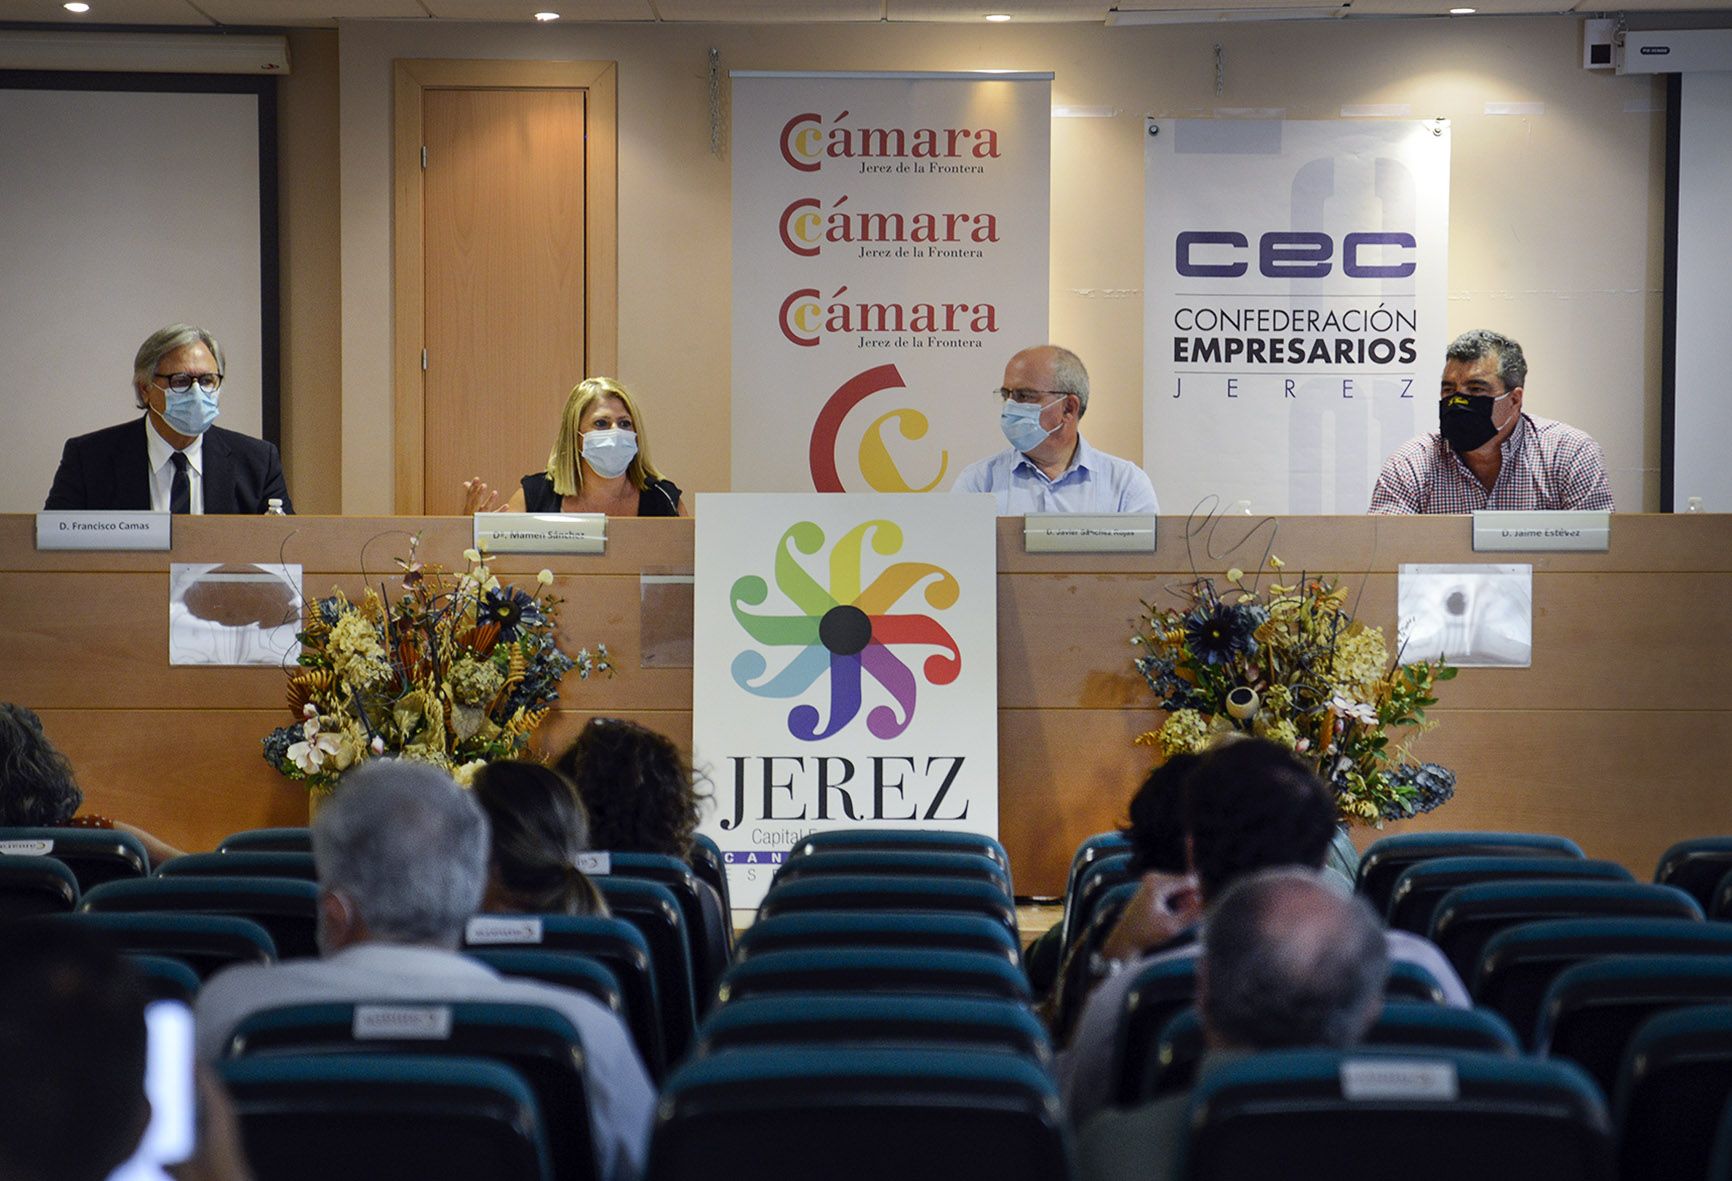 La alcaldesa Mamen Sánchez con el presidente de la Cámara de Comercio, Javier Sánchez Rojas, durante el acto.